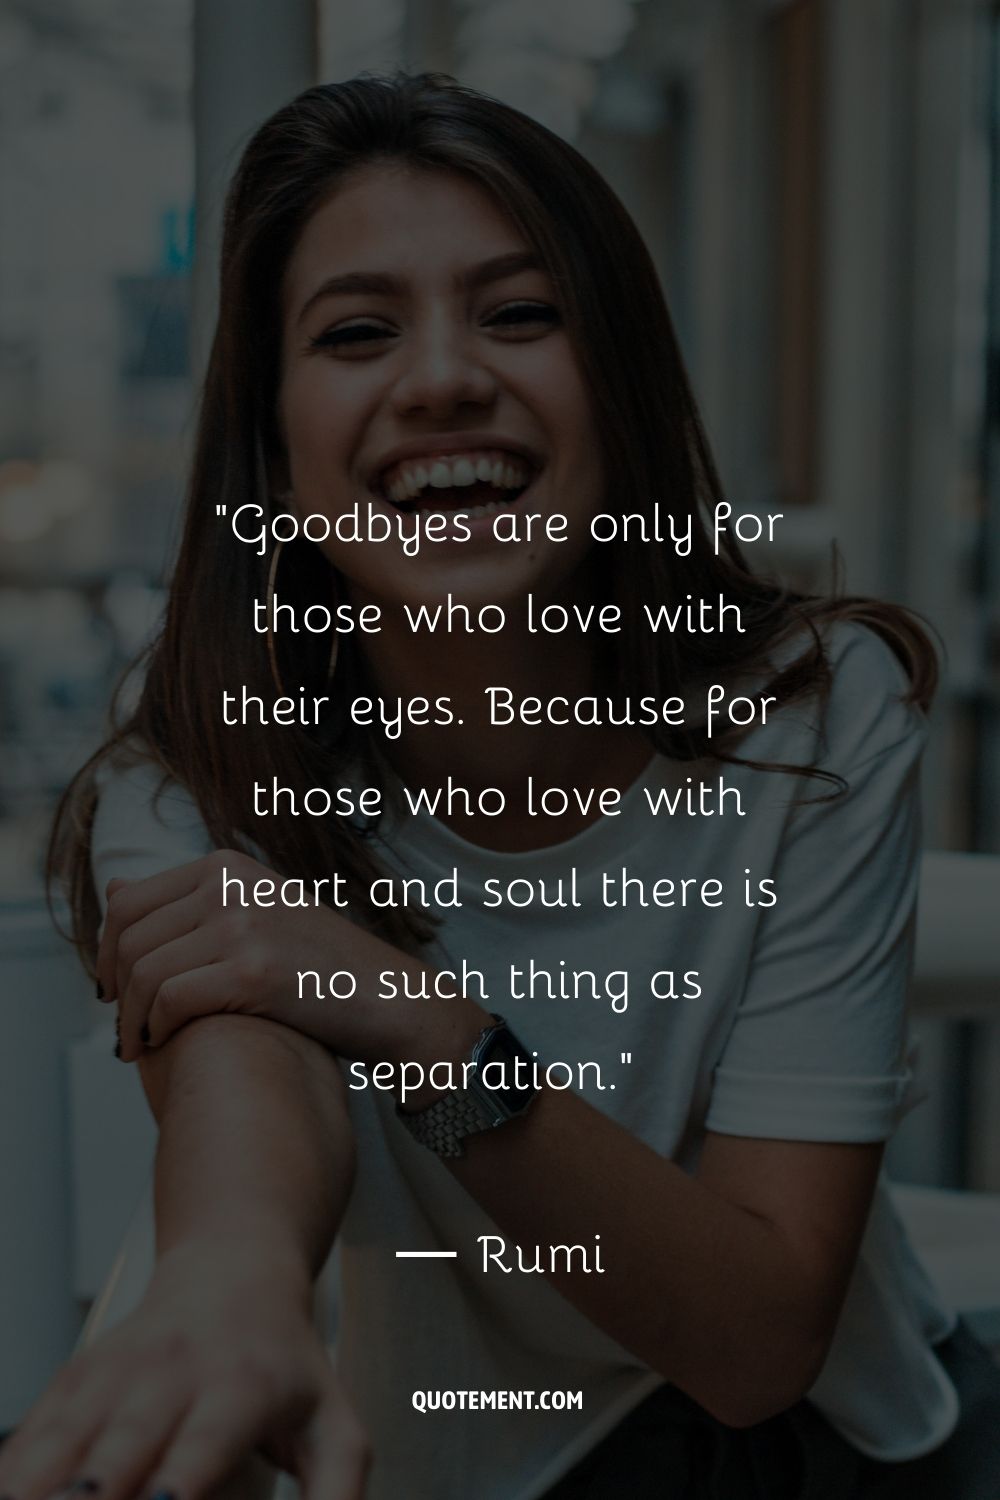 Las despedidas son sólo para los que aman con los ojos. Porque para los que aman con el corazón y el alma no existe la separación.